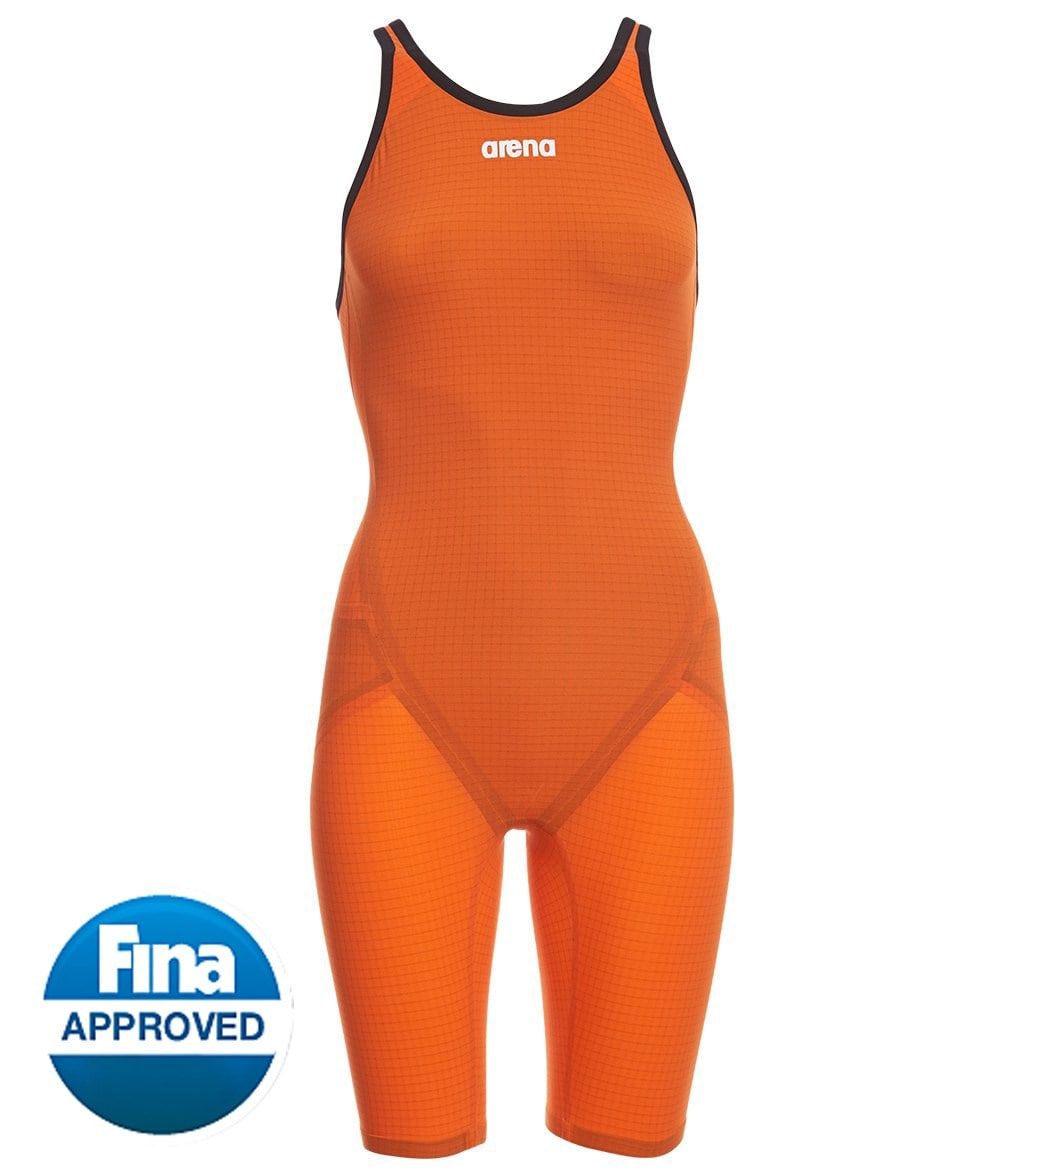 Arena Women's Limited Edition Powerskin Carbon Flex Vx Open Back Tech Suit Swimsuit - Orange 30 Carbon/Elastane/Nylon - Swimoutlet.com